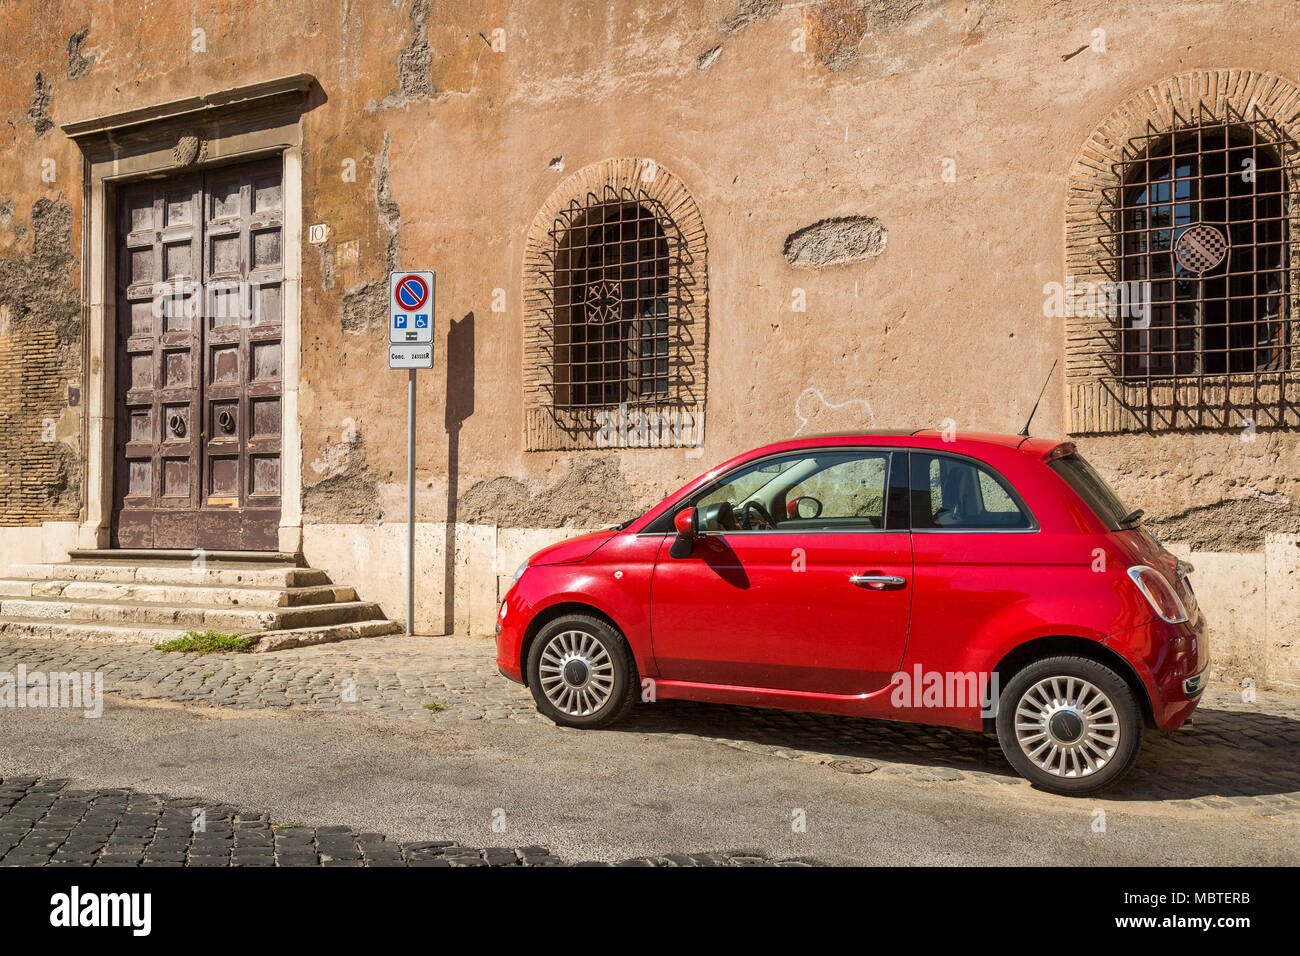 Une Fiat 500 rouge sur une rue pavée en partie dans la zone Trastevere de Rome, Italie, c'est garé dans un espace de stationnement pour personnes handicapées comme indiqué par le signe, à proximité Banque D'Images